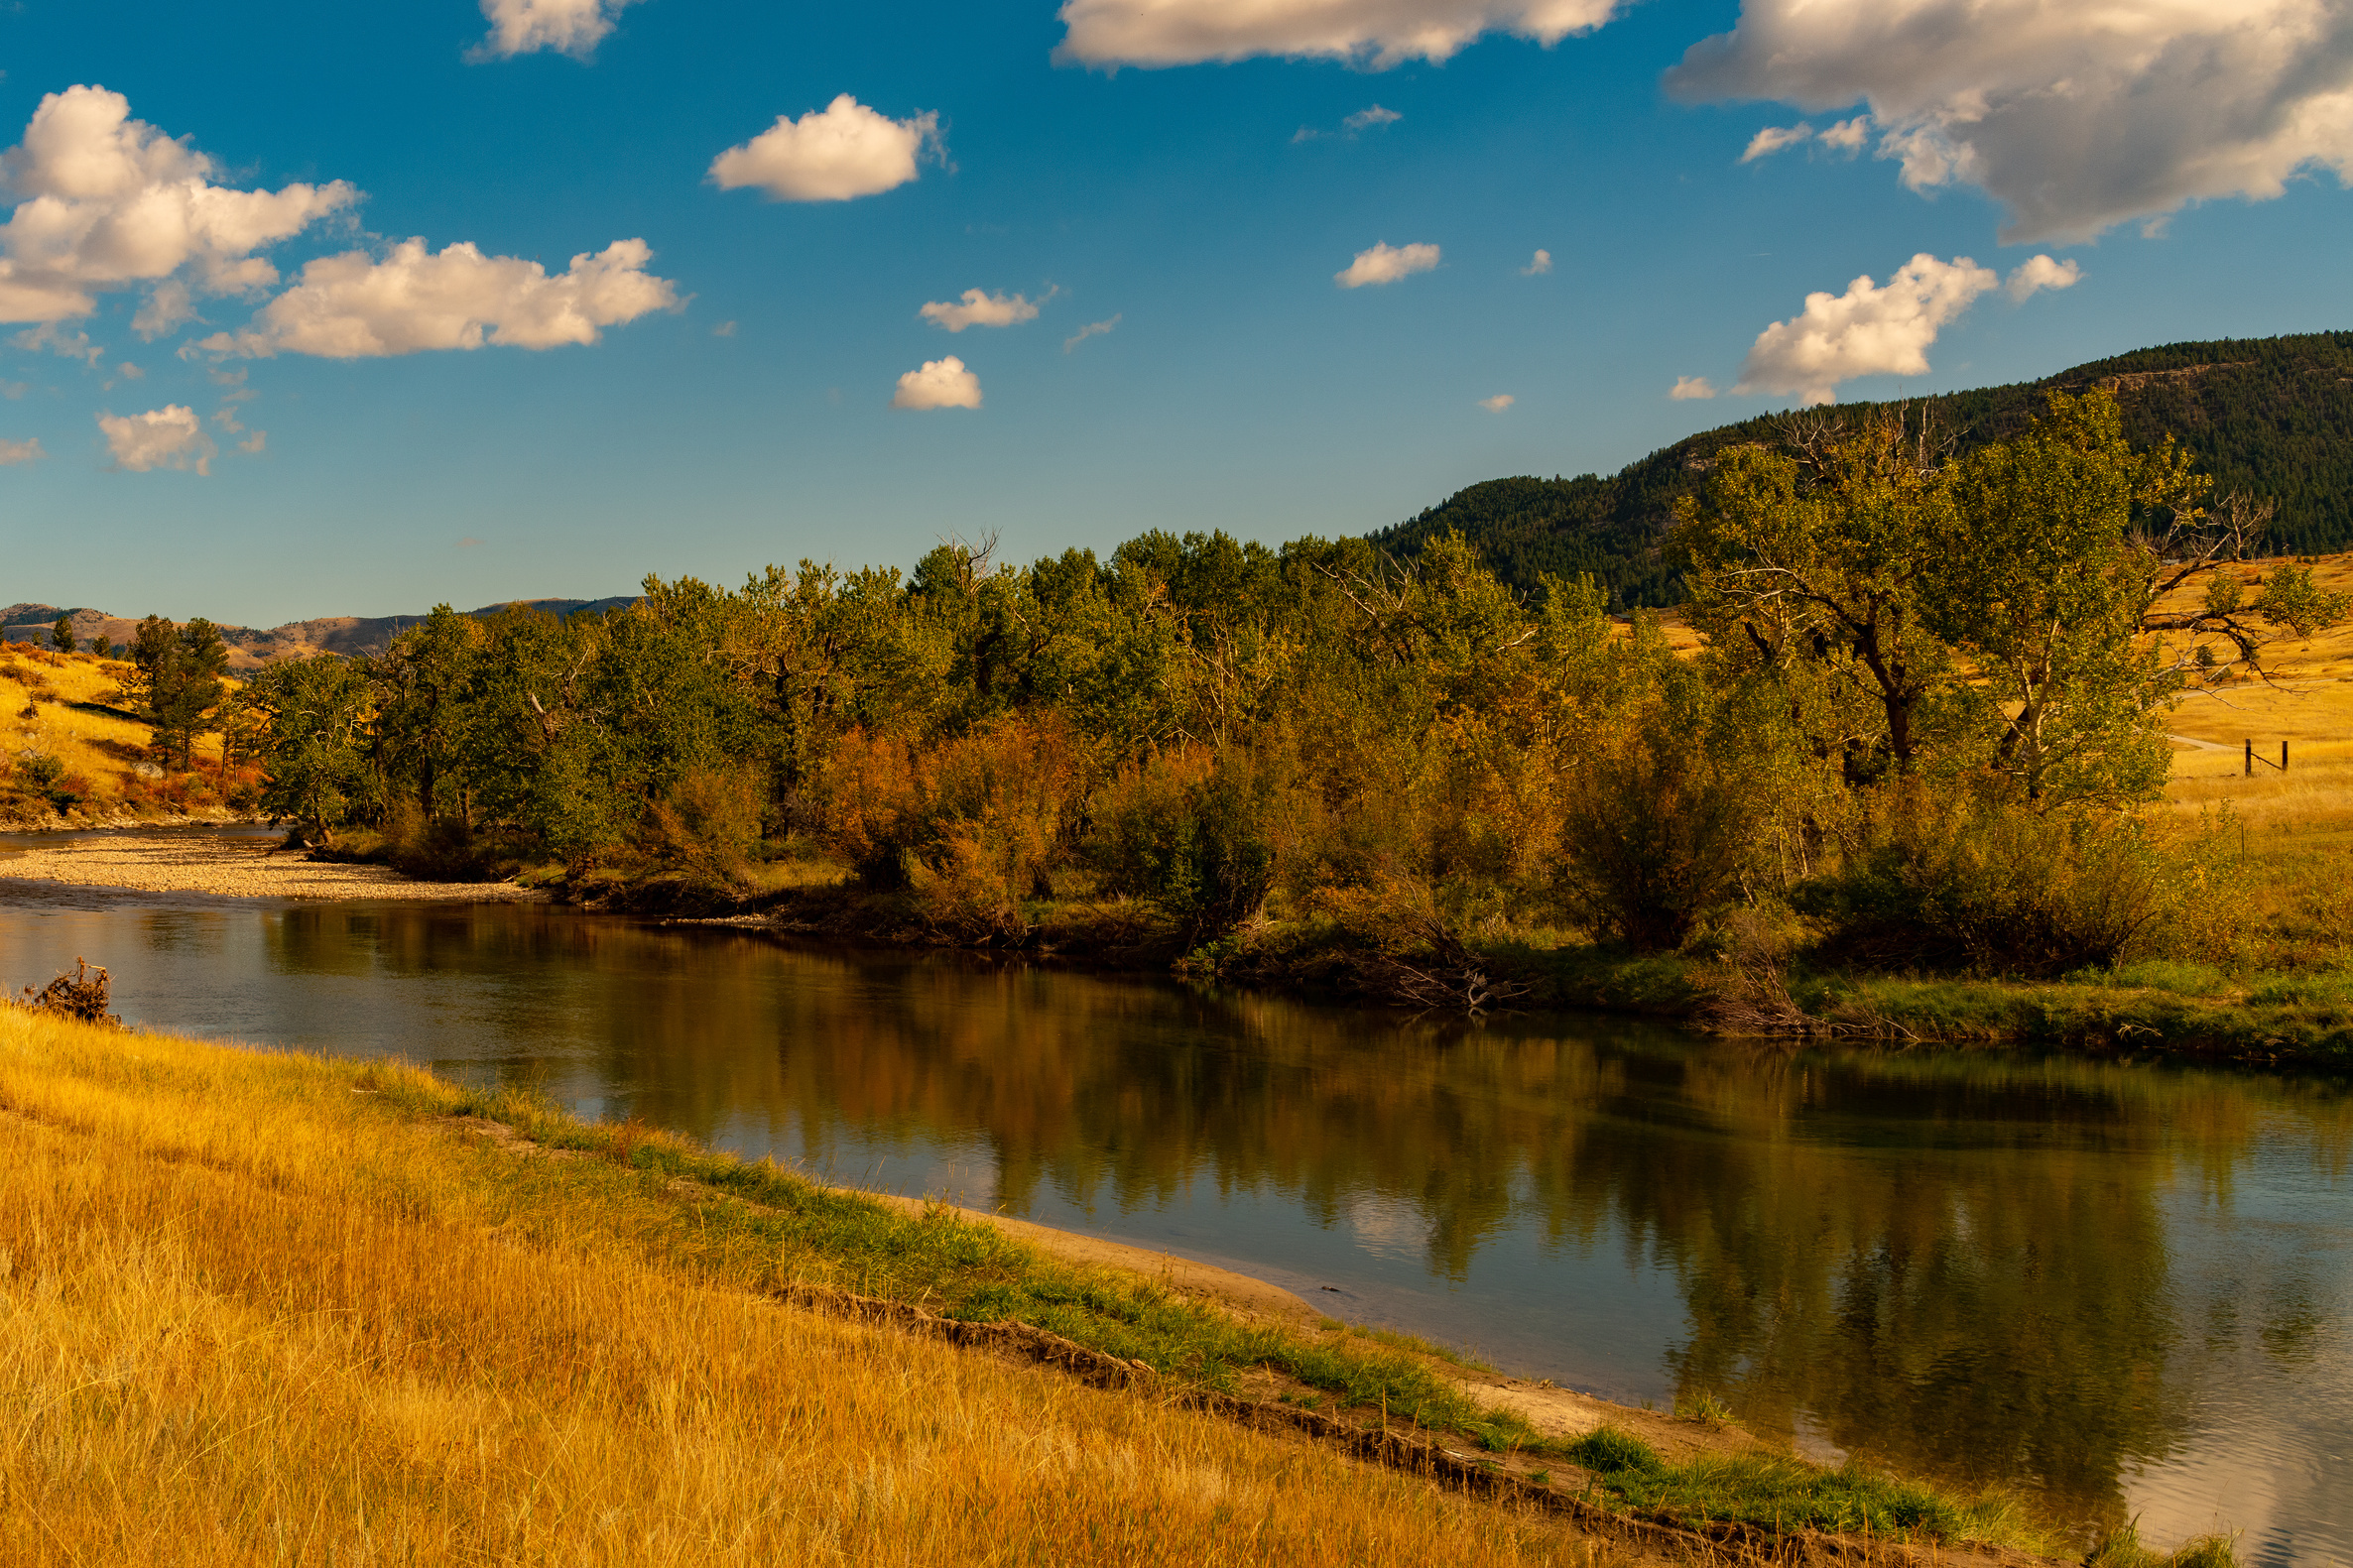 Stillwater River near Nye, Montana in western USA